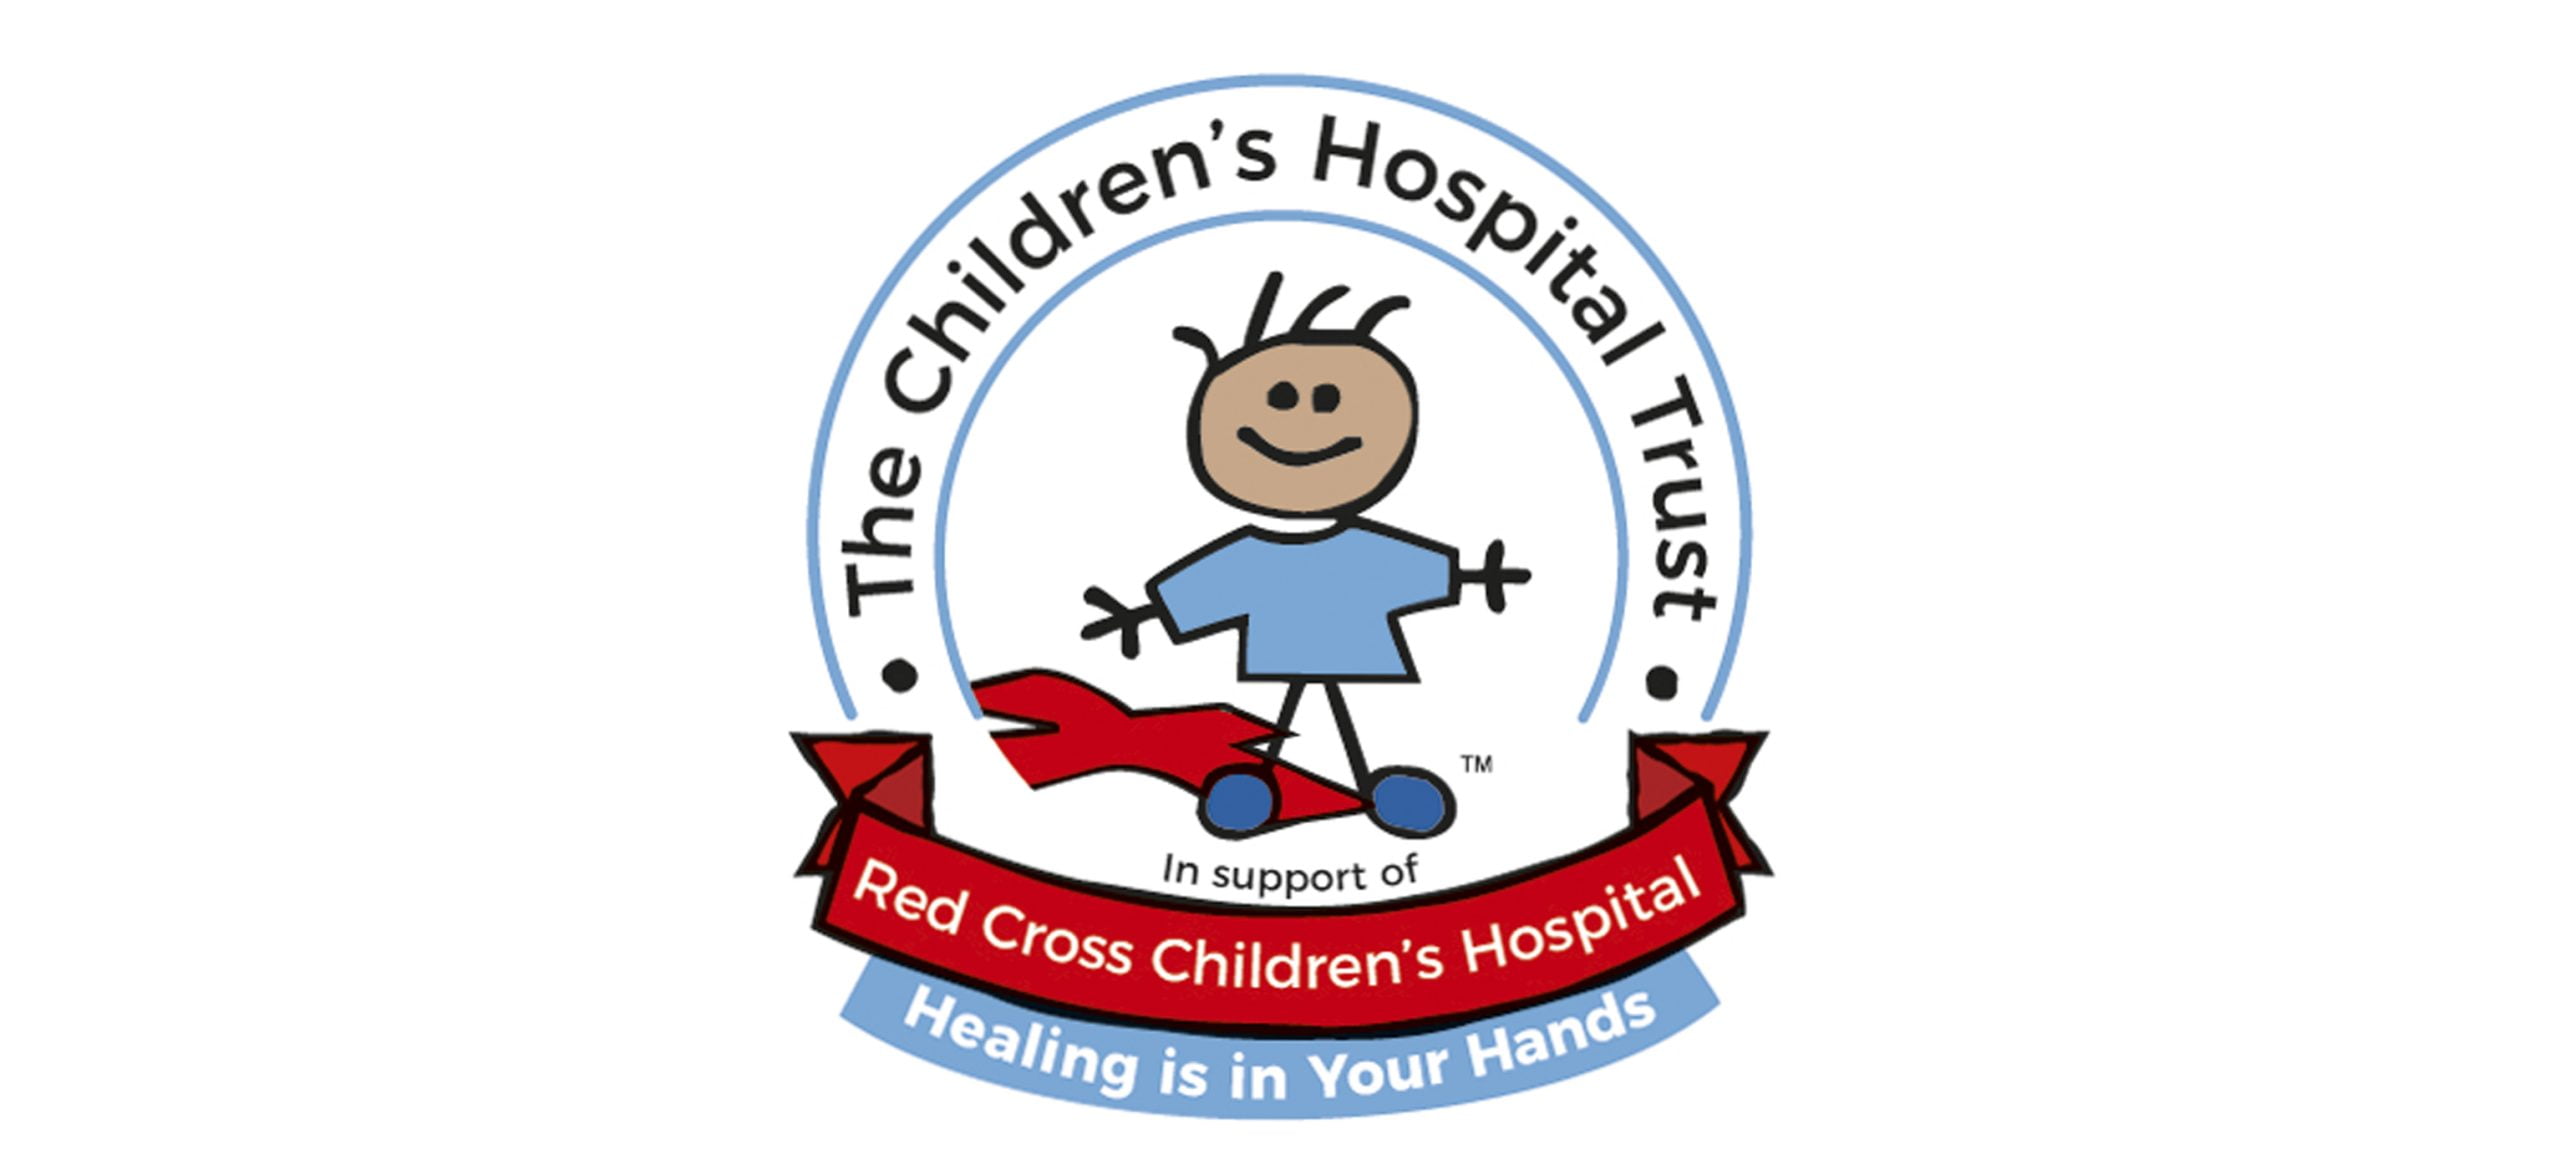 The Red Cross Children’s Hospital Trust